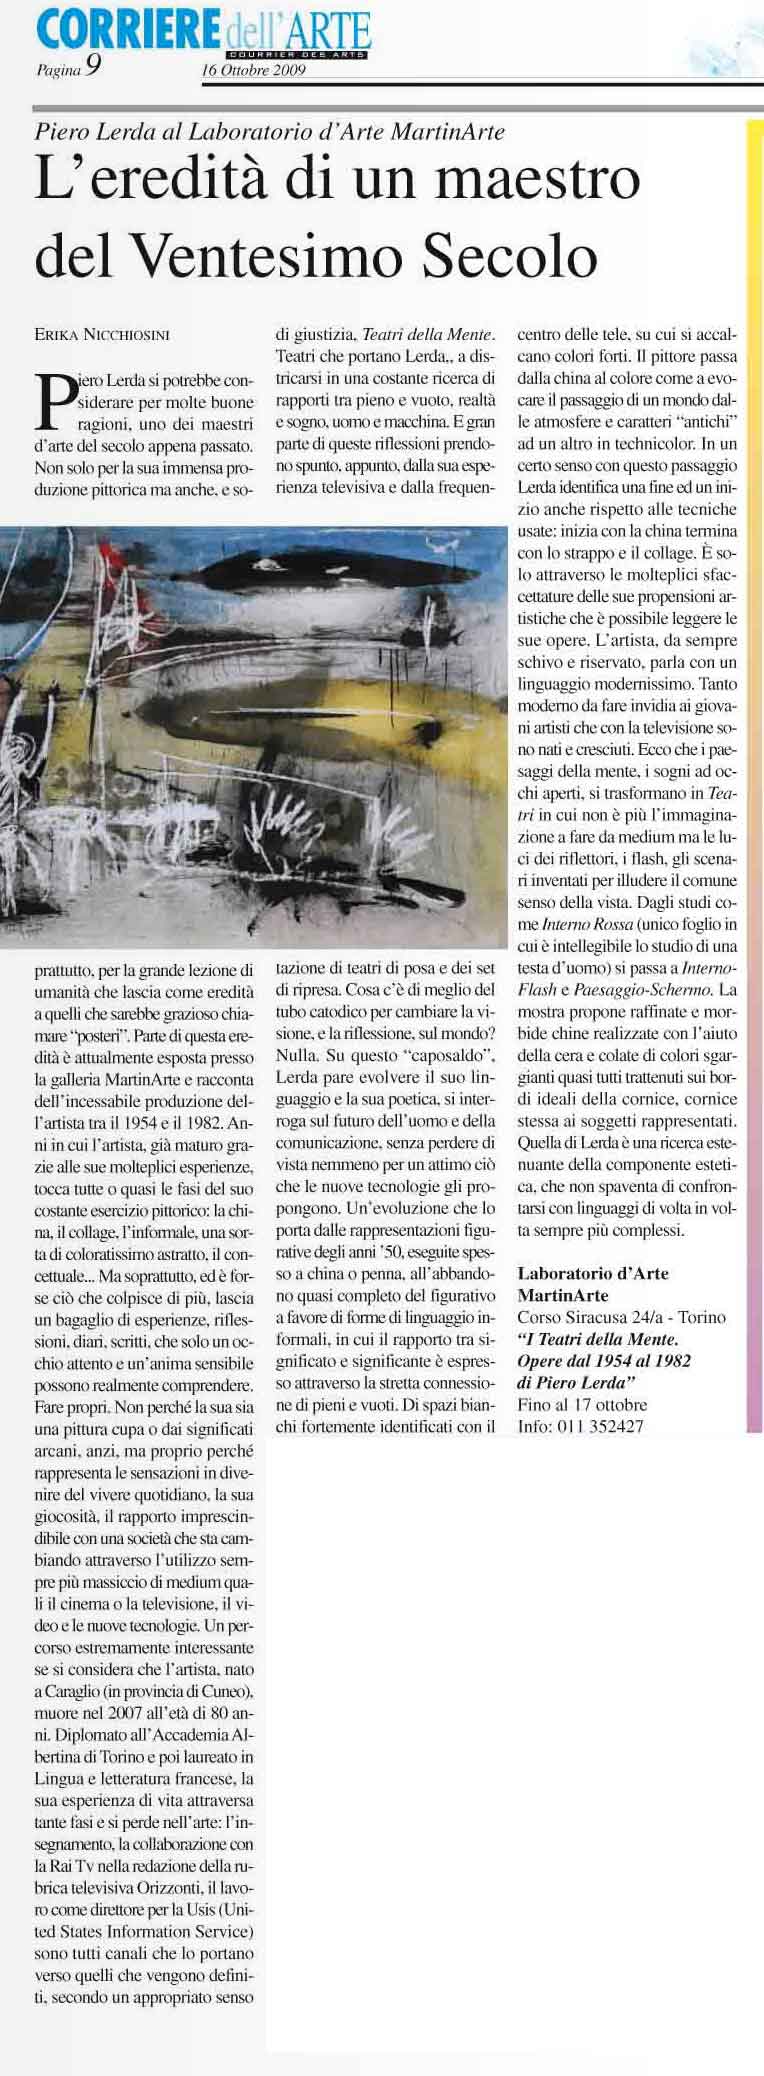 Corriere dell'Arte, 16 Ottobre 2009, N.31, p.9